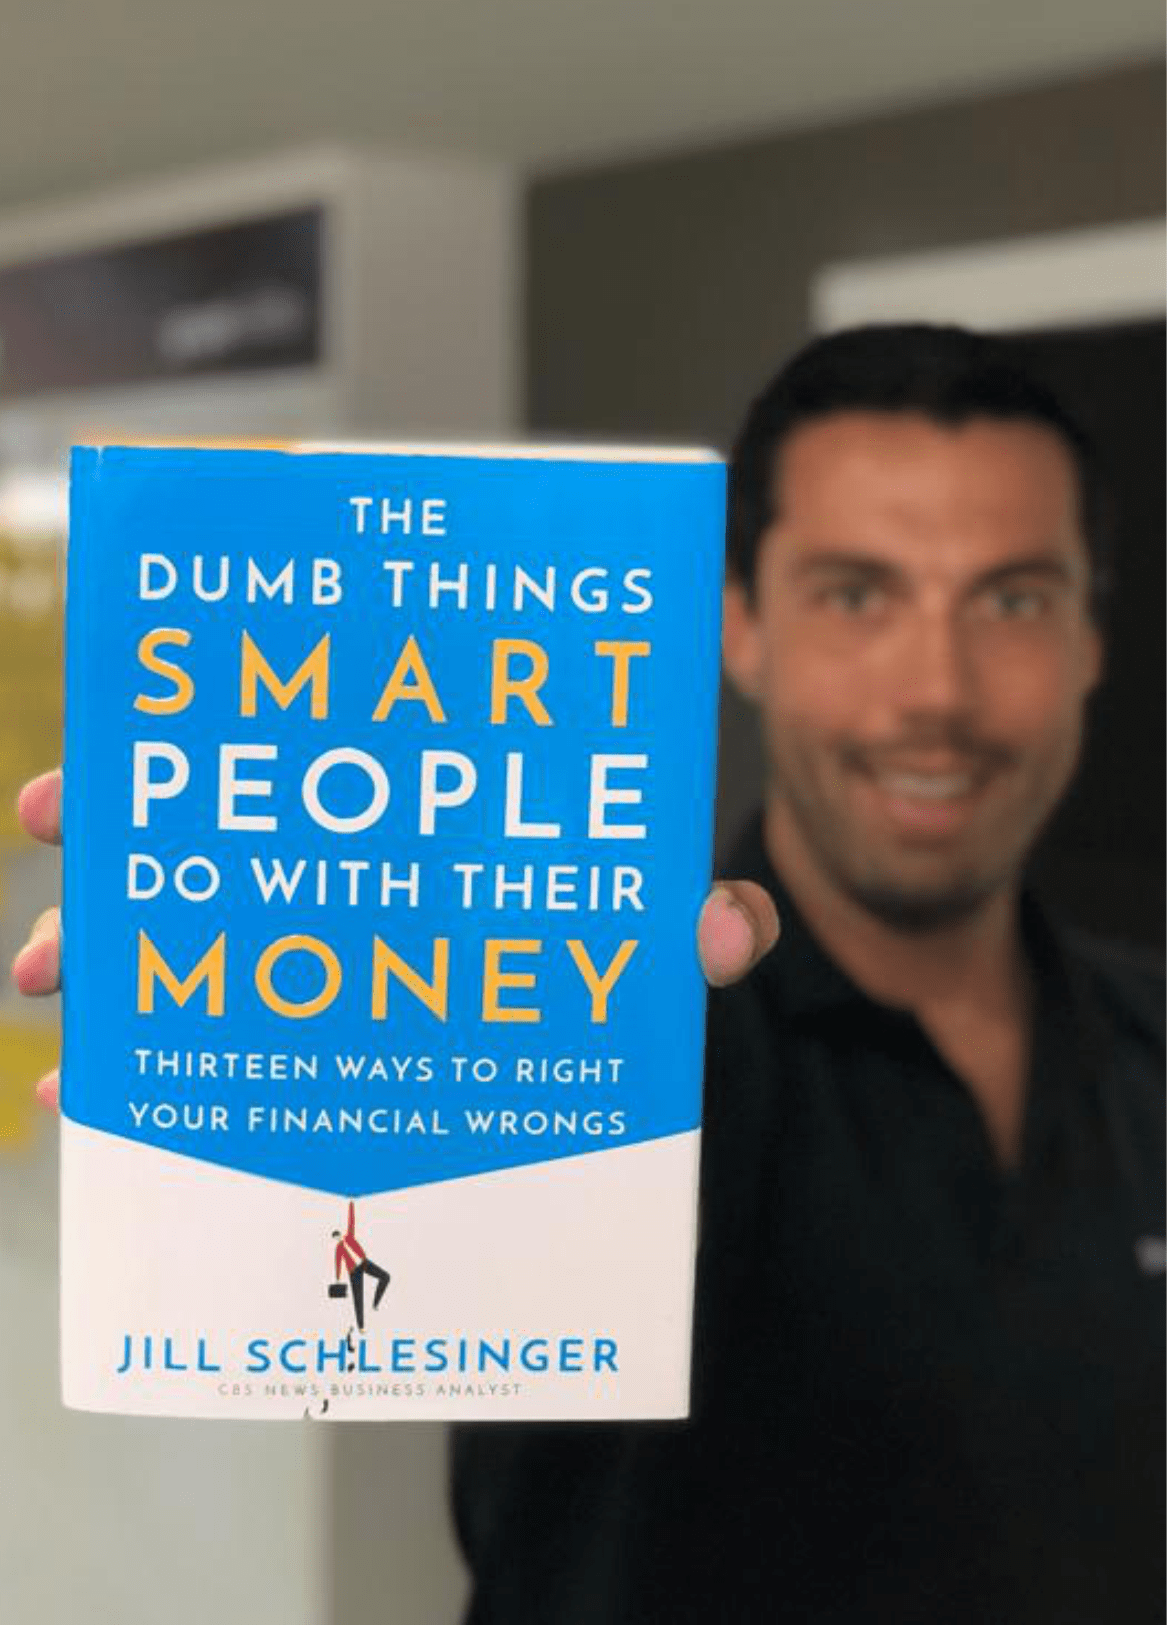 聰明人用錢做的愚蠢的事情 - Jill Schlesinger